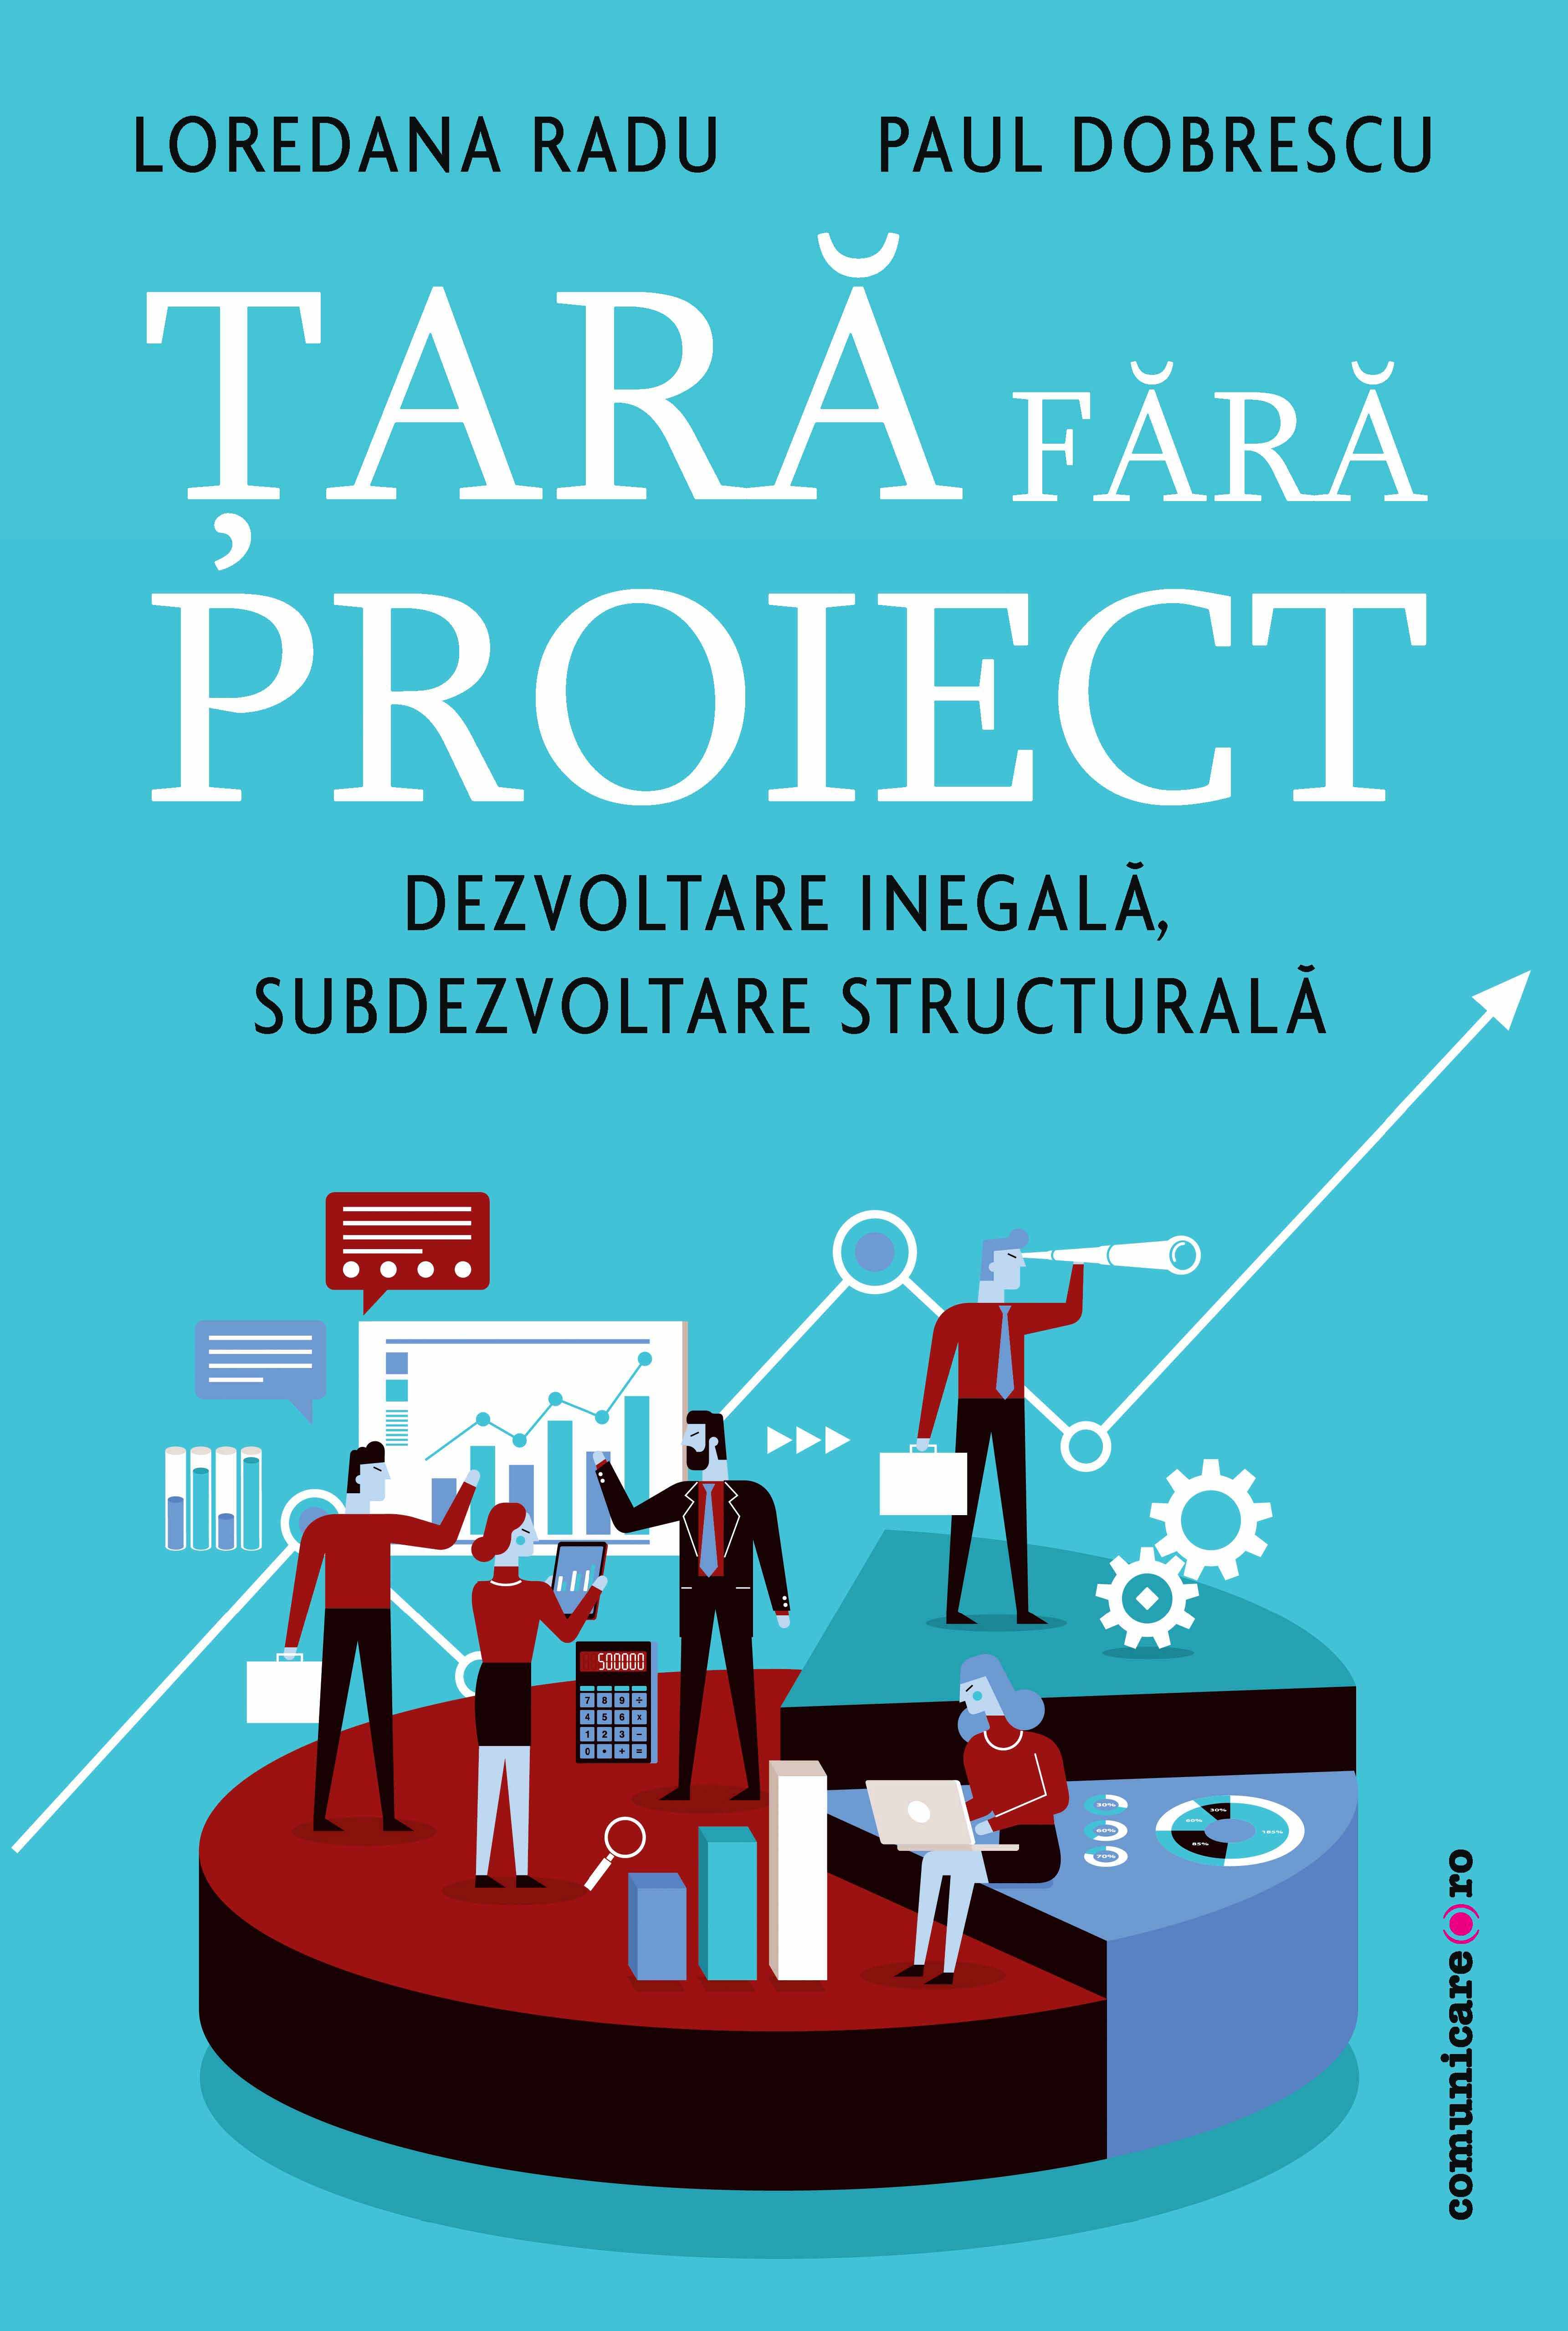 Tara fara proiect | Loredana Radu, Paul Dobrescu